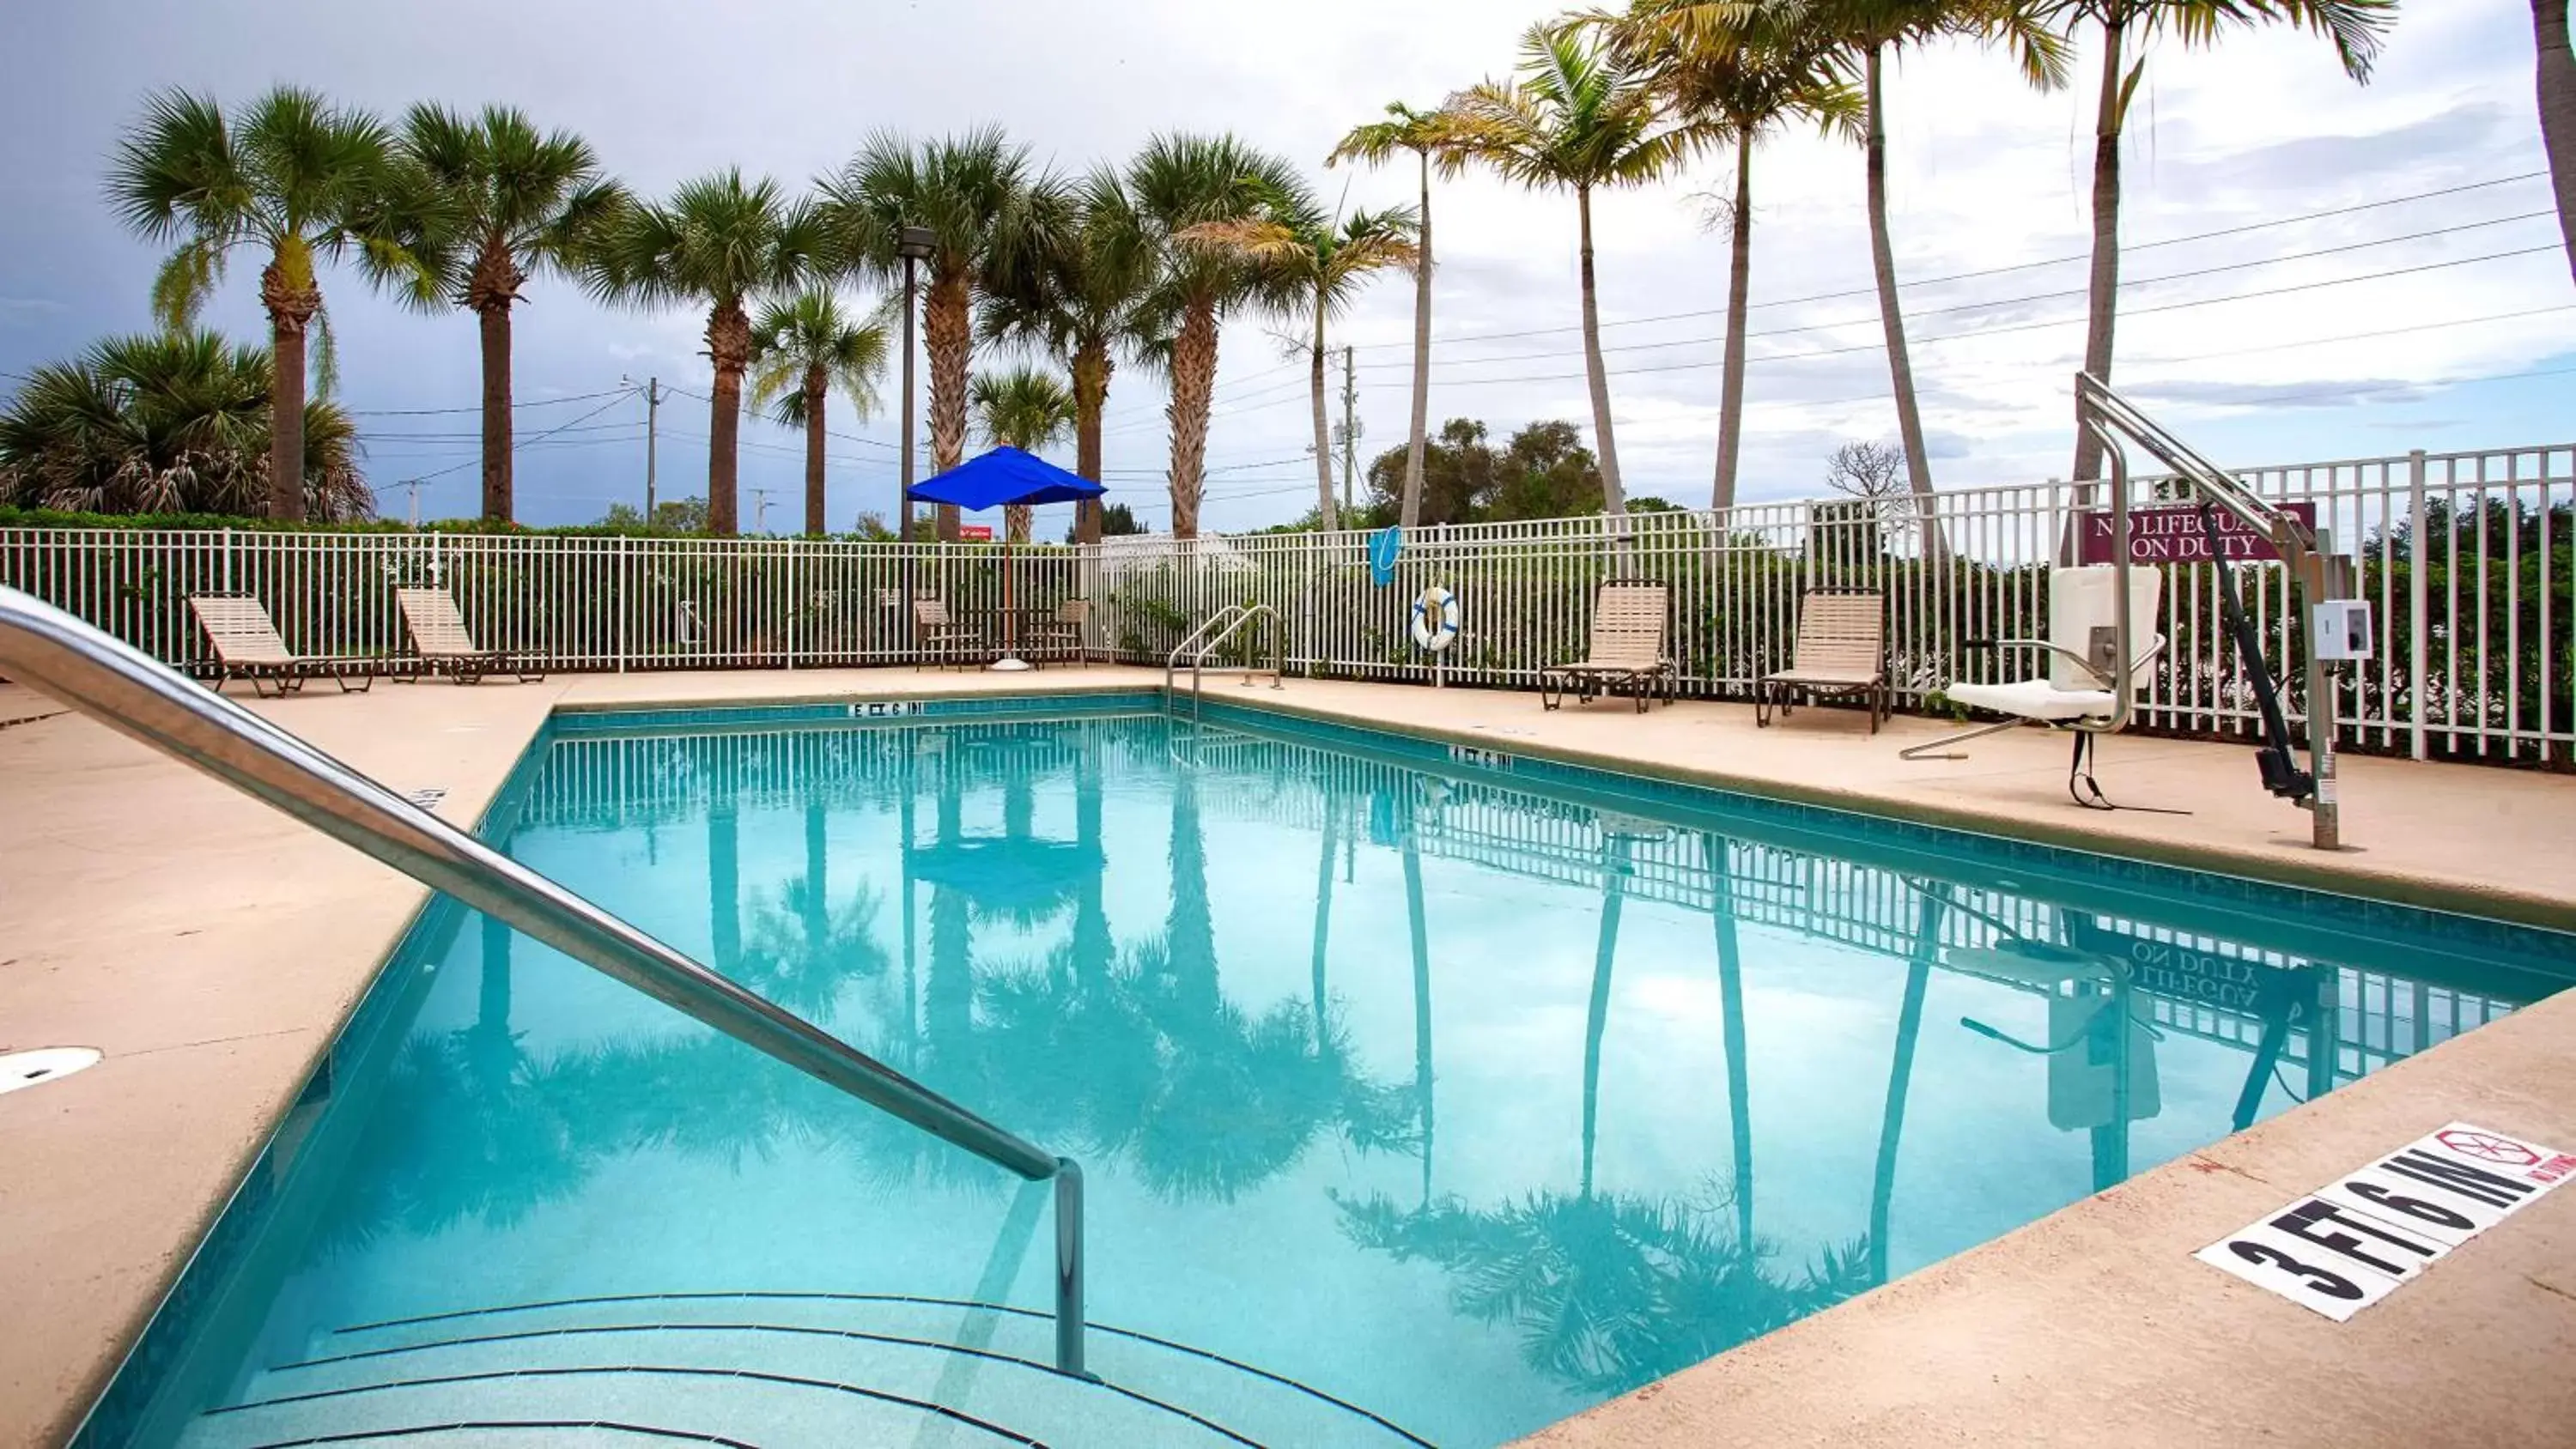 On site, Swimming Pool in Best Western Plus Sebastian Hotel & Suites